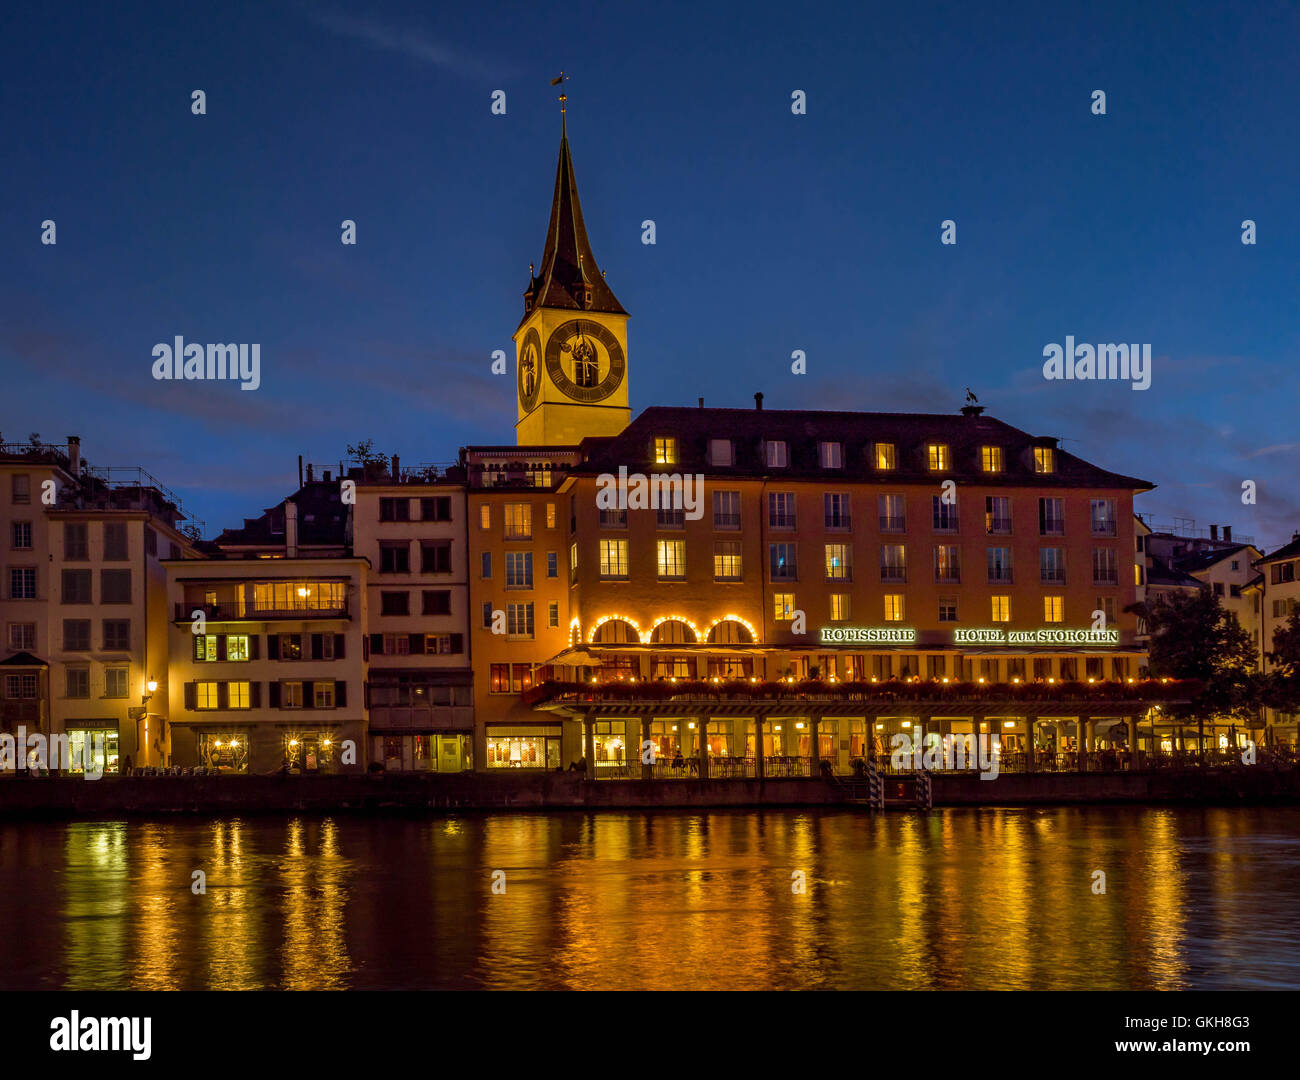 St. Peters Church and Hotel zum Storchen in Zurich at night, Switzerland, Europe. Stock Photo